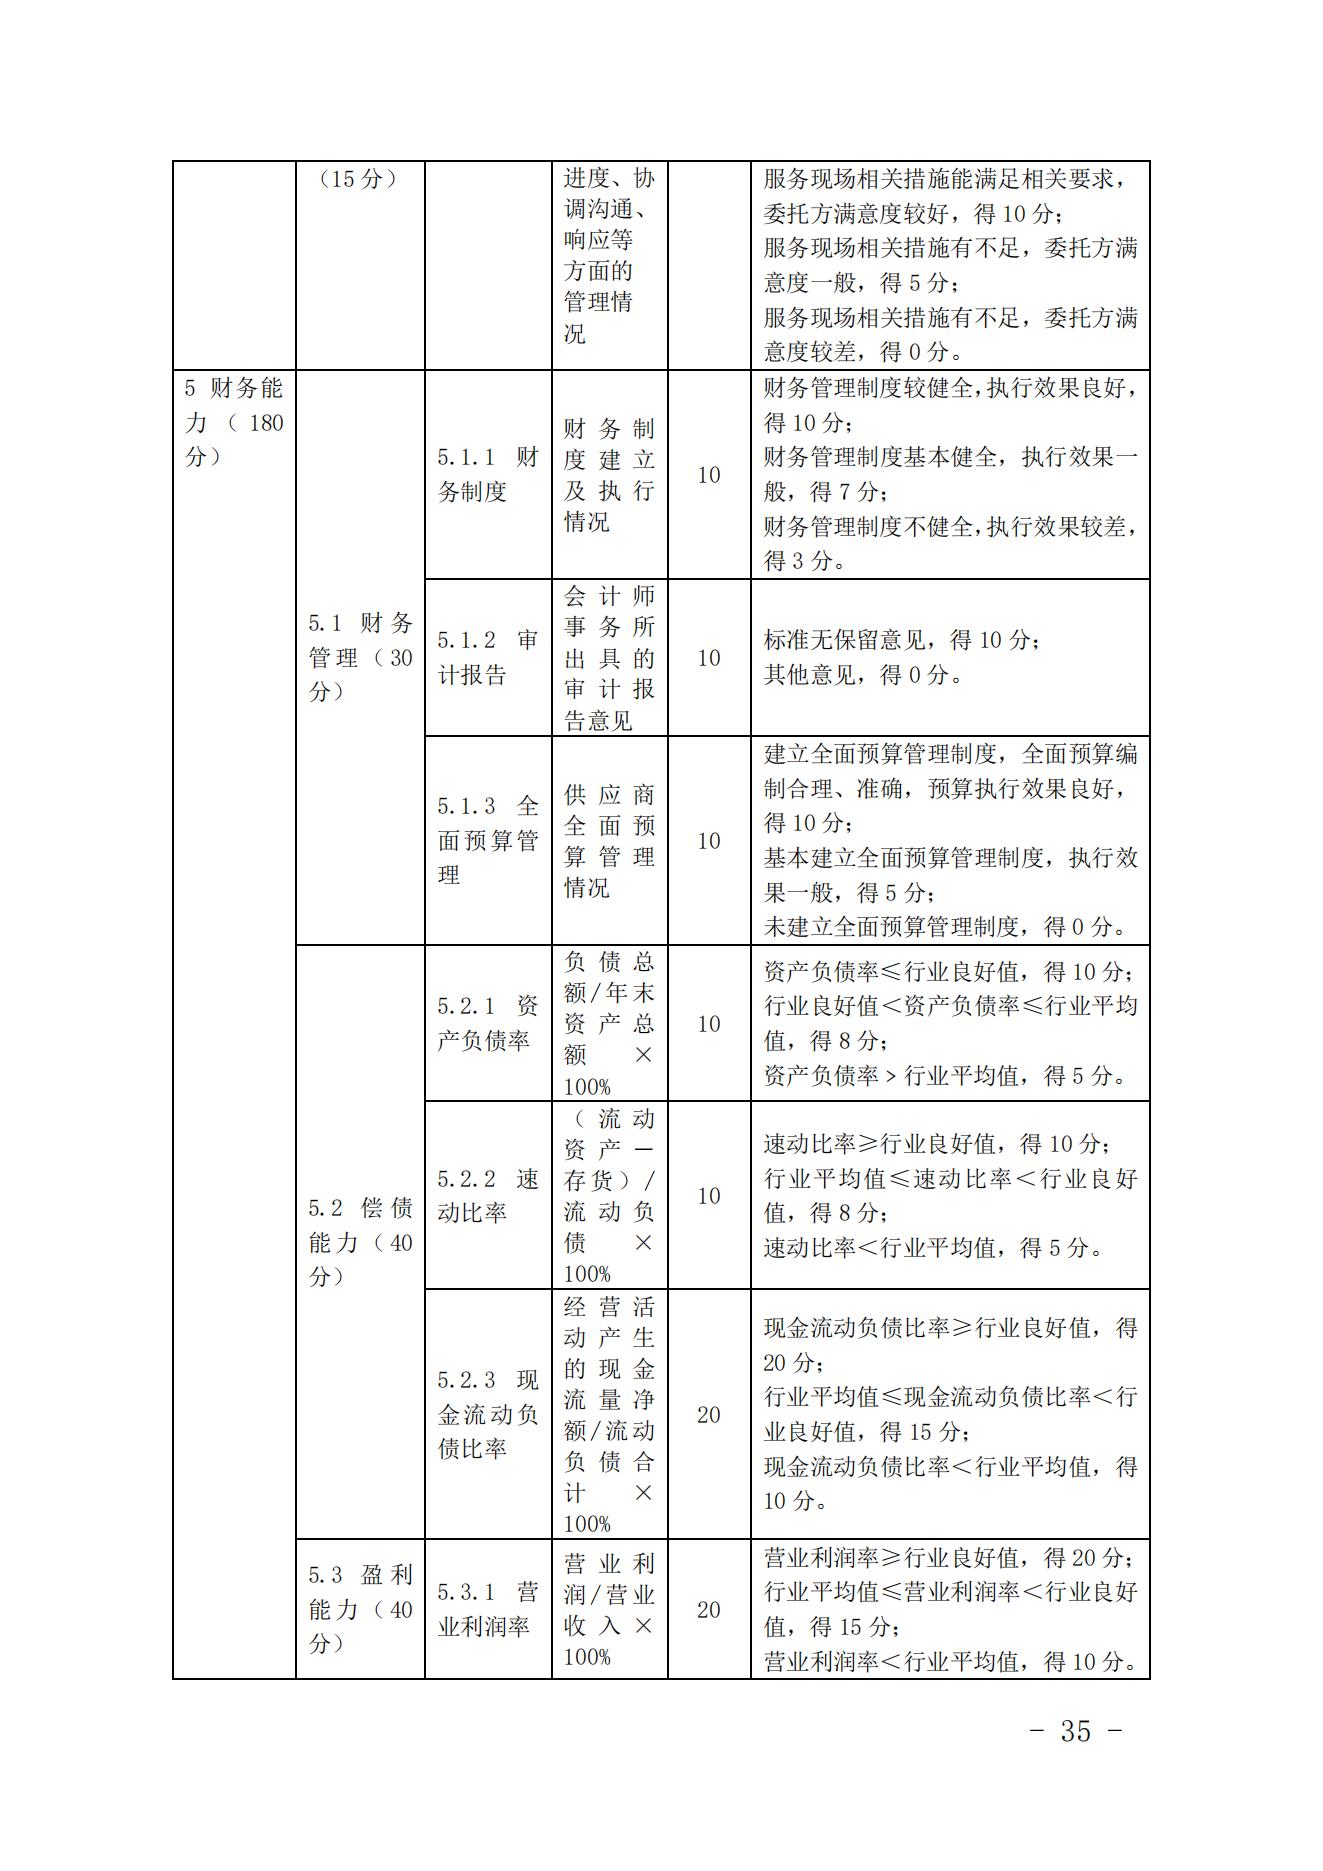 关于印发《中国核能行业协会核能行业供应商信用评价管理办法》《中国核能行业协会核能行业供应商信用评价规范》的通知_34.jpg